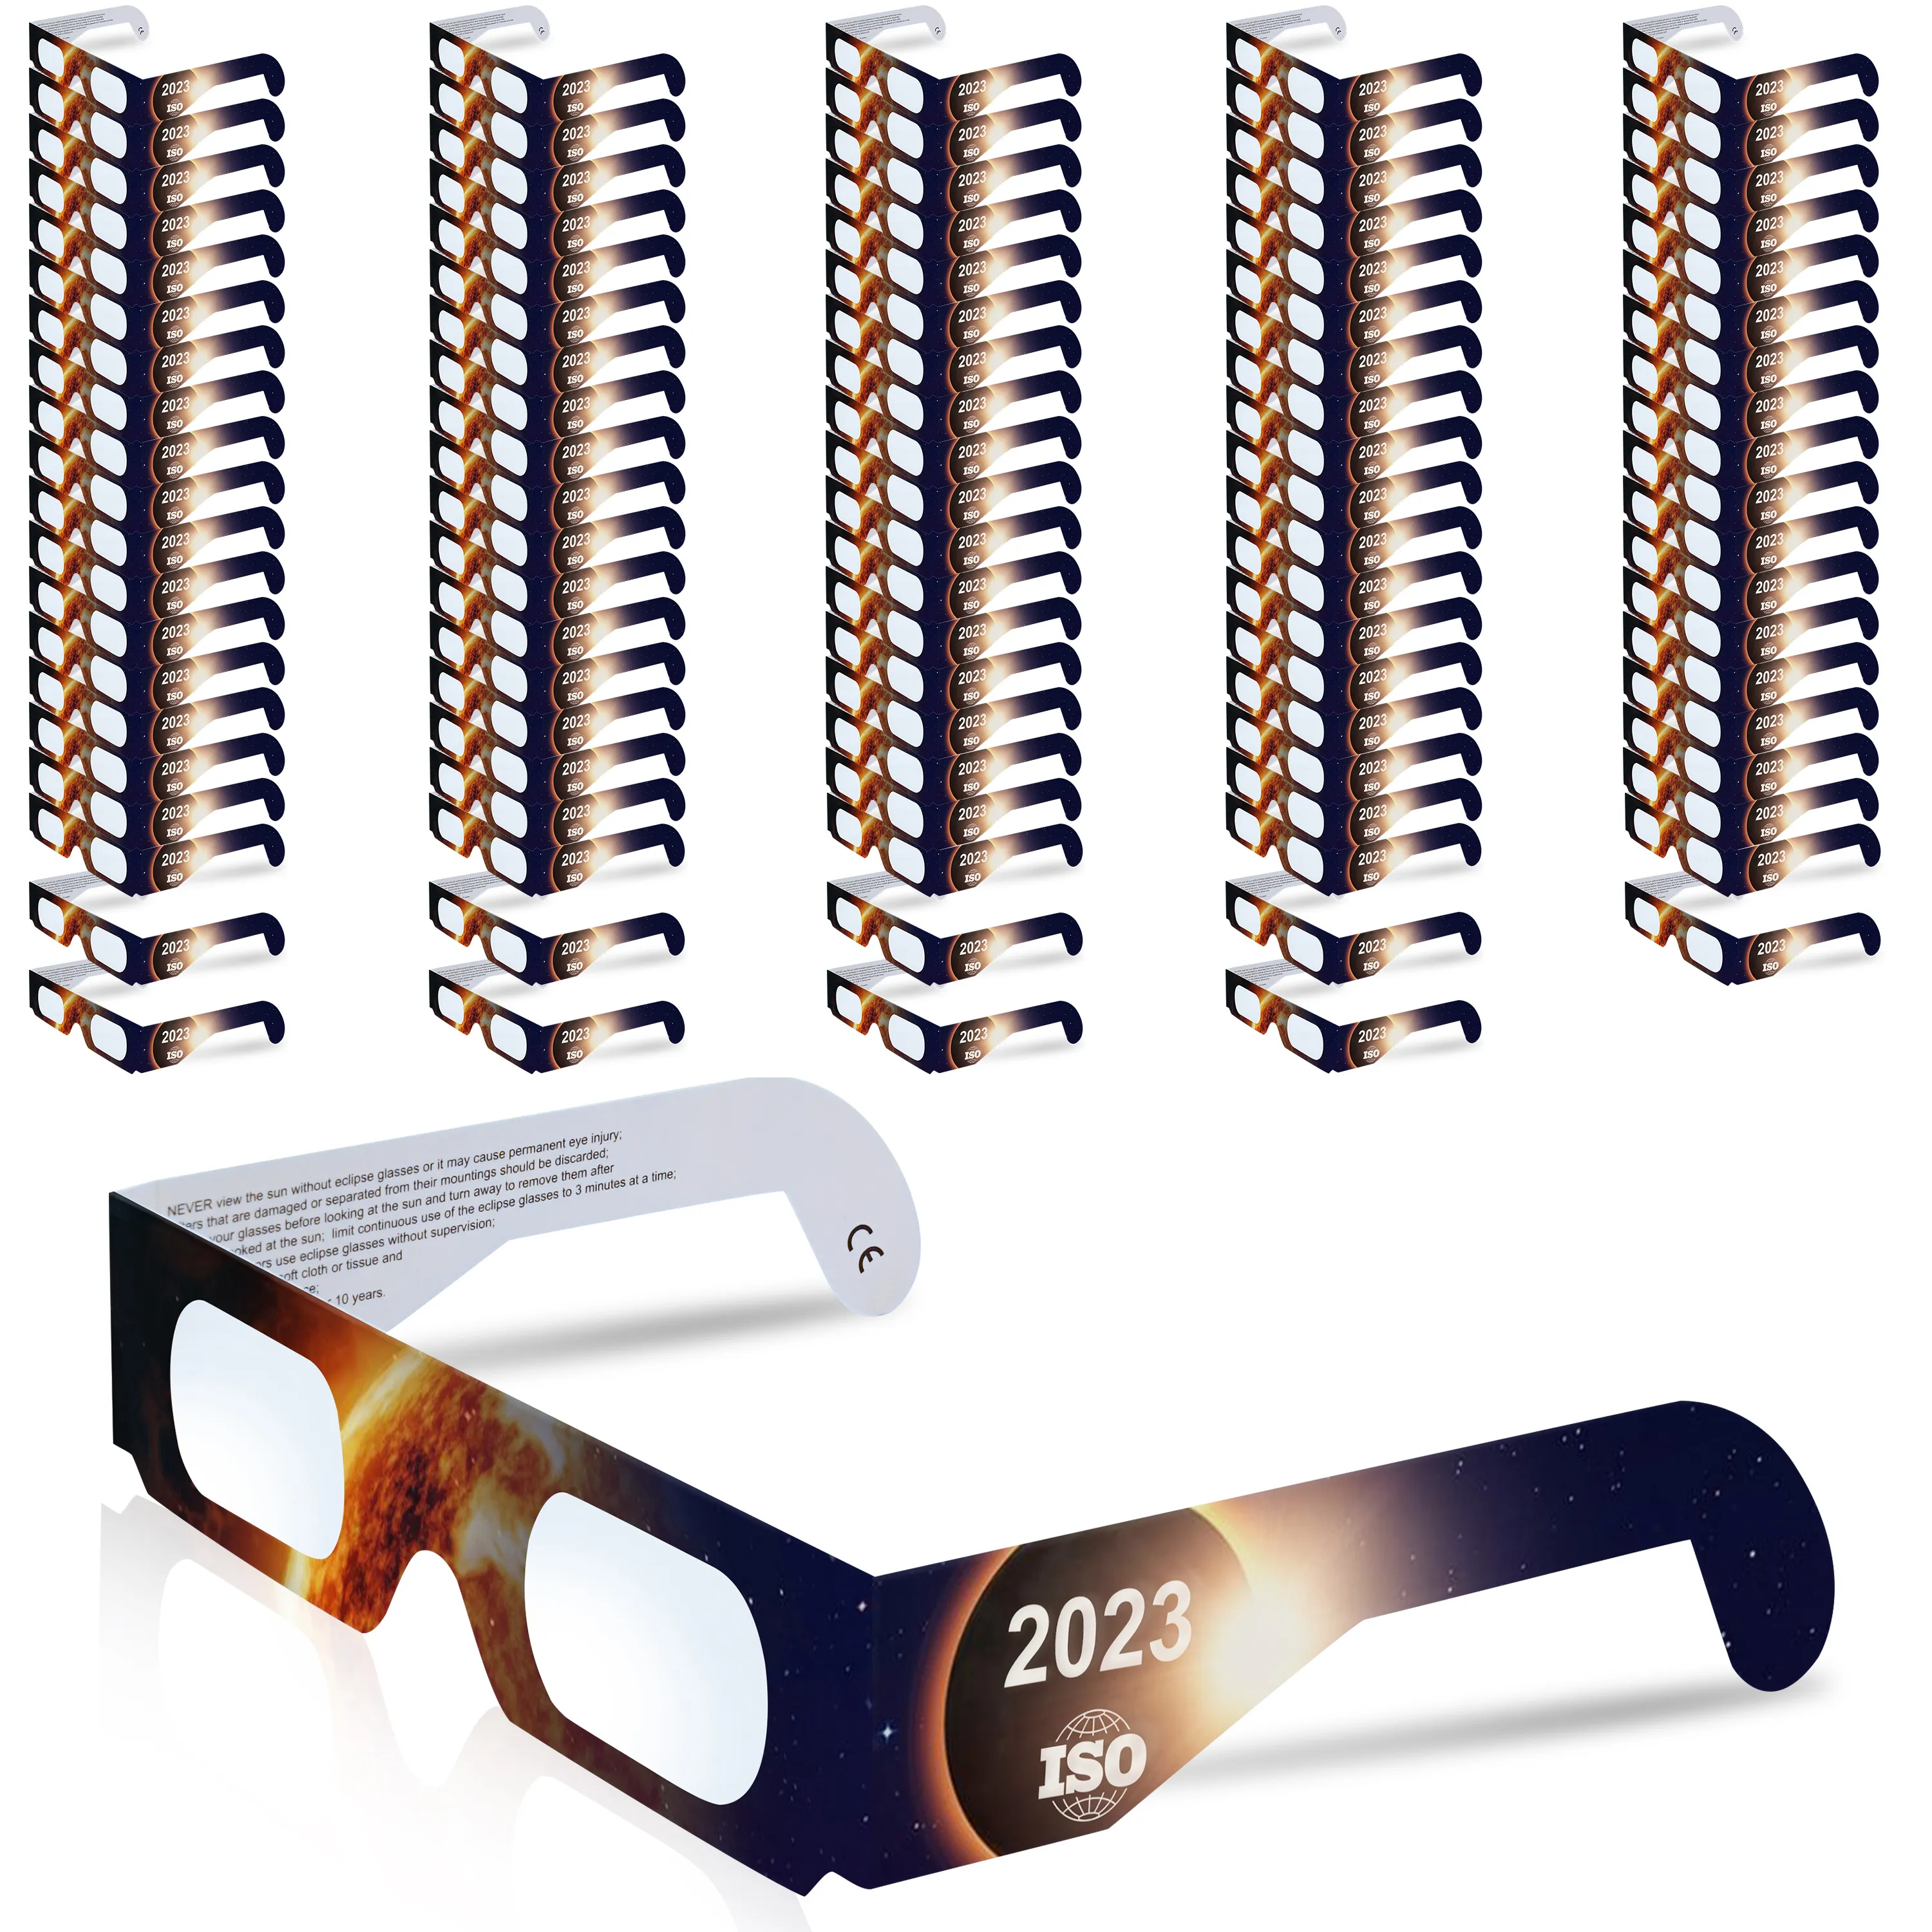 100 stuks zonsverduisteringsbril van NASA goedgekeurde fabriek CE en ISO gecertificeerd voor optische kwaliteit die veilig kijken naar de zon biedt tijdens zonsverduistering